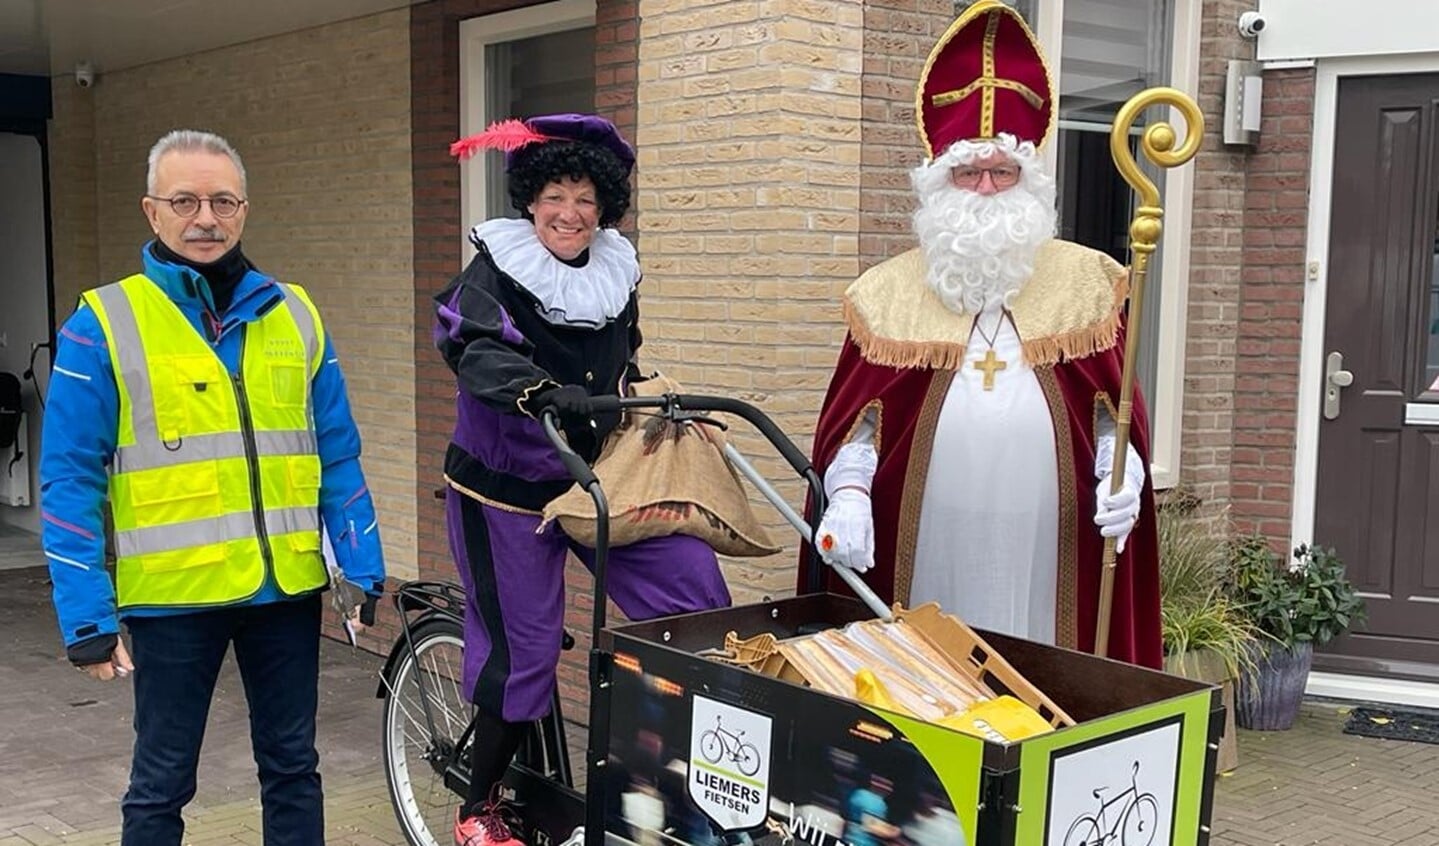 De Sint en zijn fietspiet kwamen langs voor een bedanje